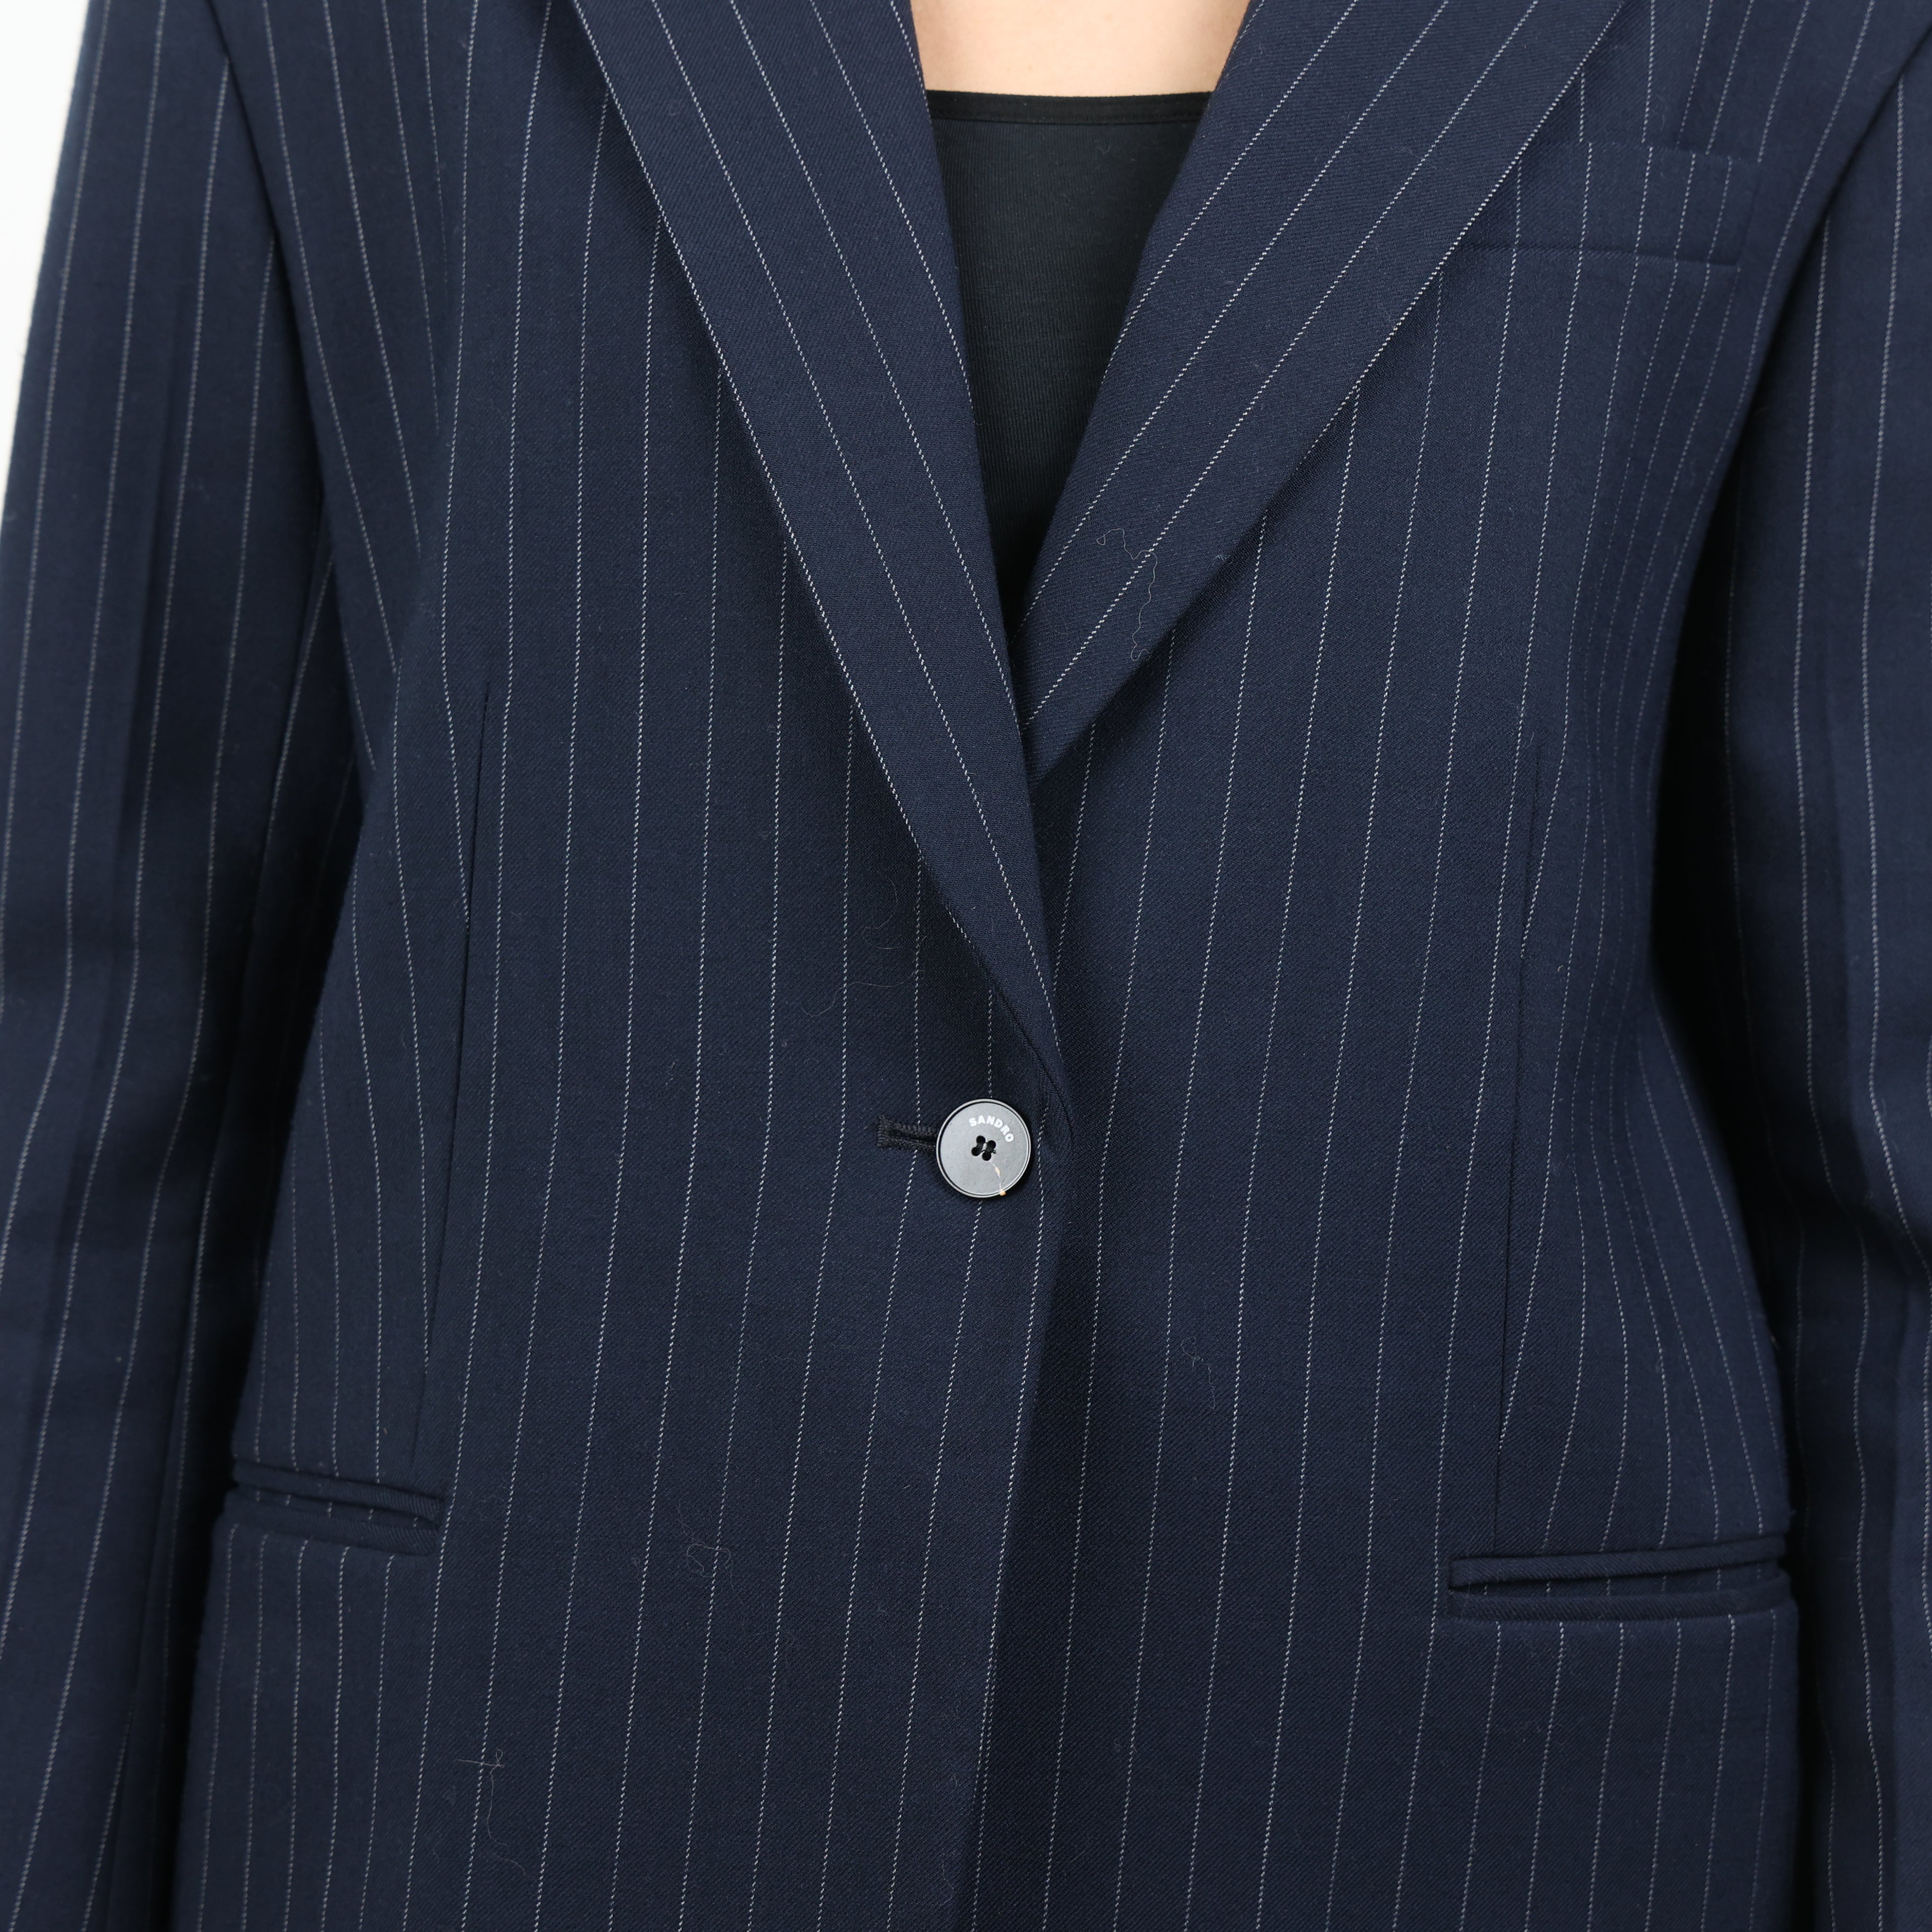 Suit, UK Size 6